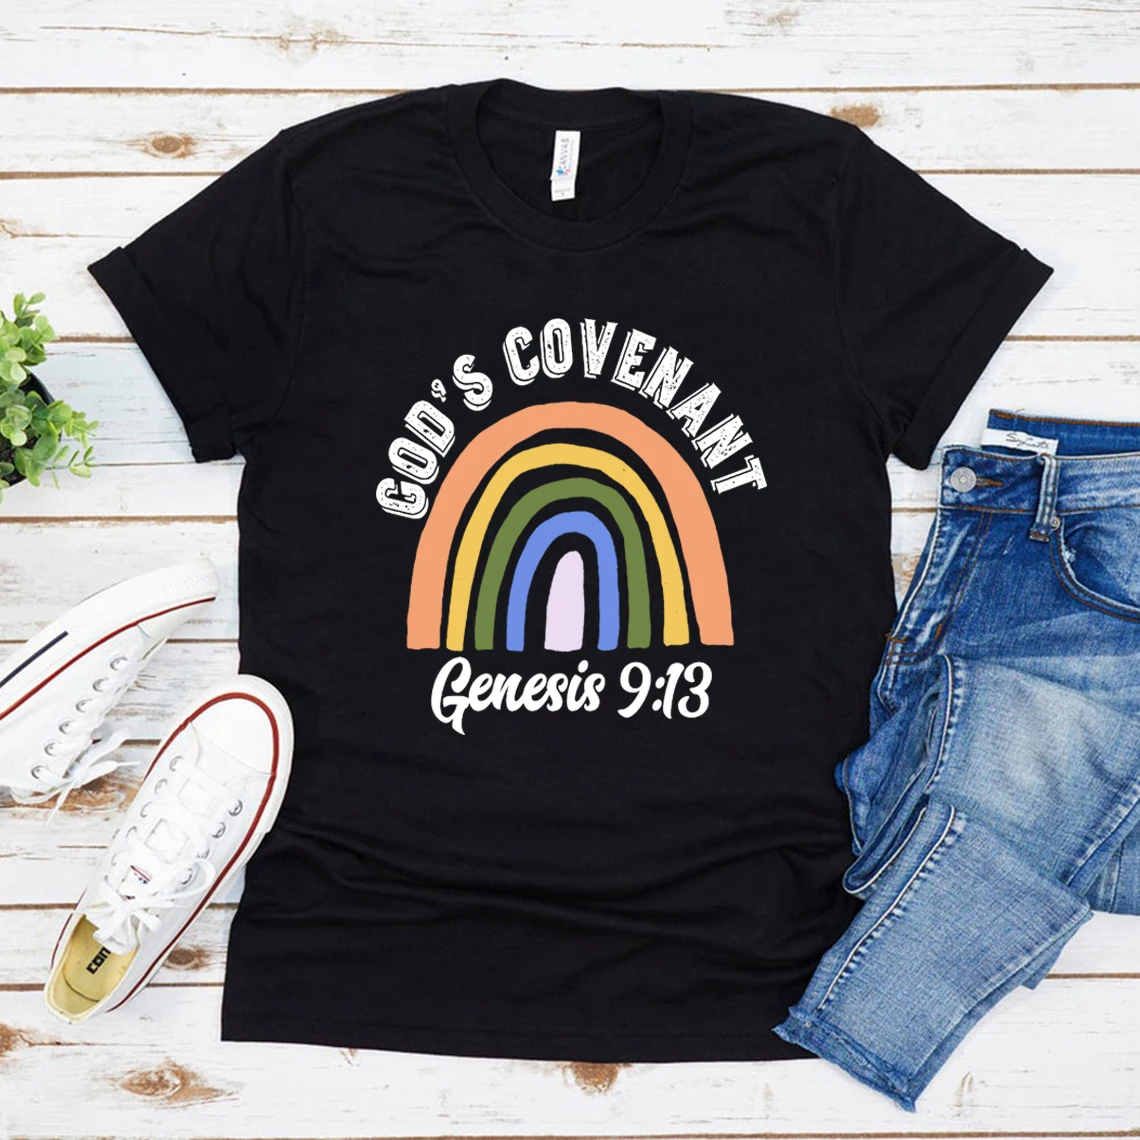 

Кристианская Радужная футболка с текстом Библии, футболка с текстом Genesis 9:13, женские футболки с рисунком веры и церкви, женские футболки, топы